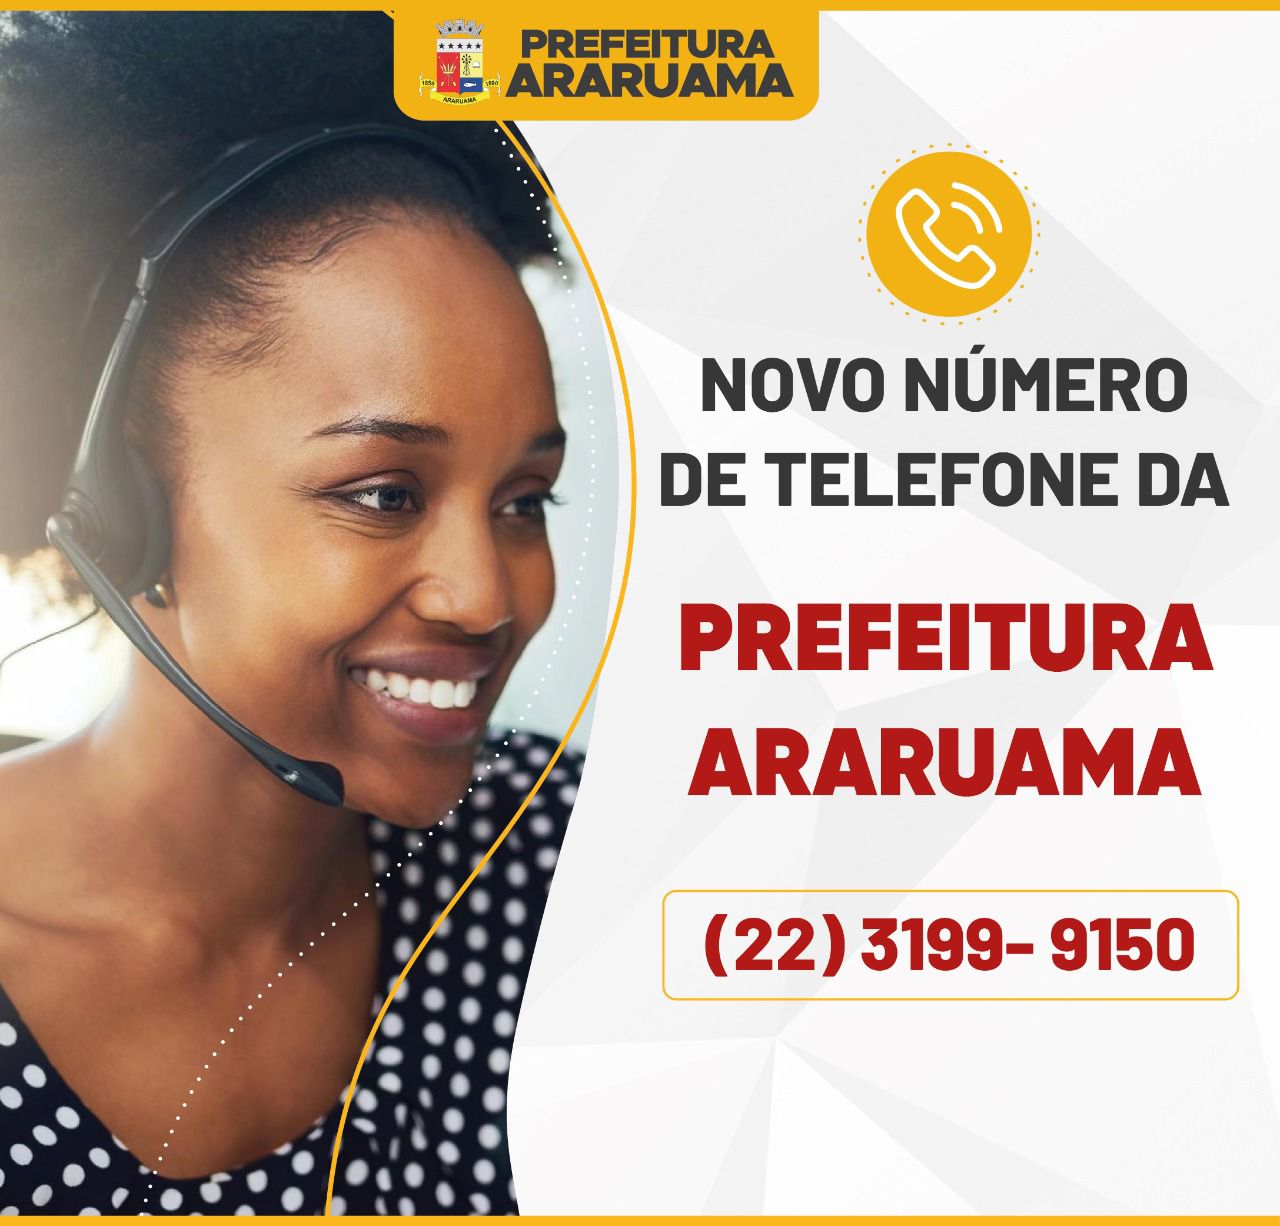 Mudança no número de telefone da Prefeitura de Araruama